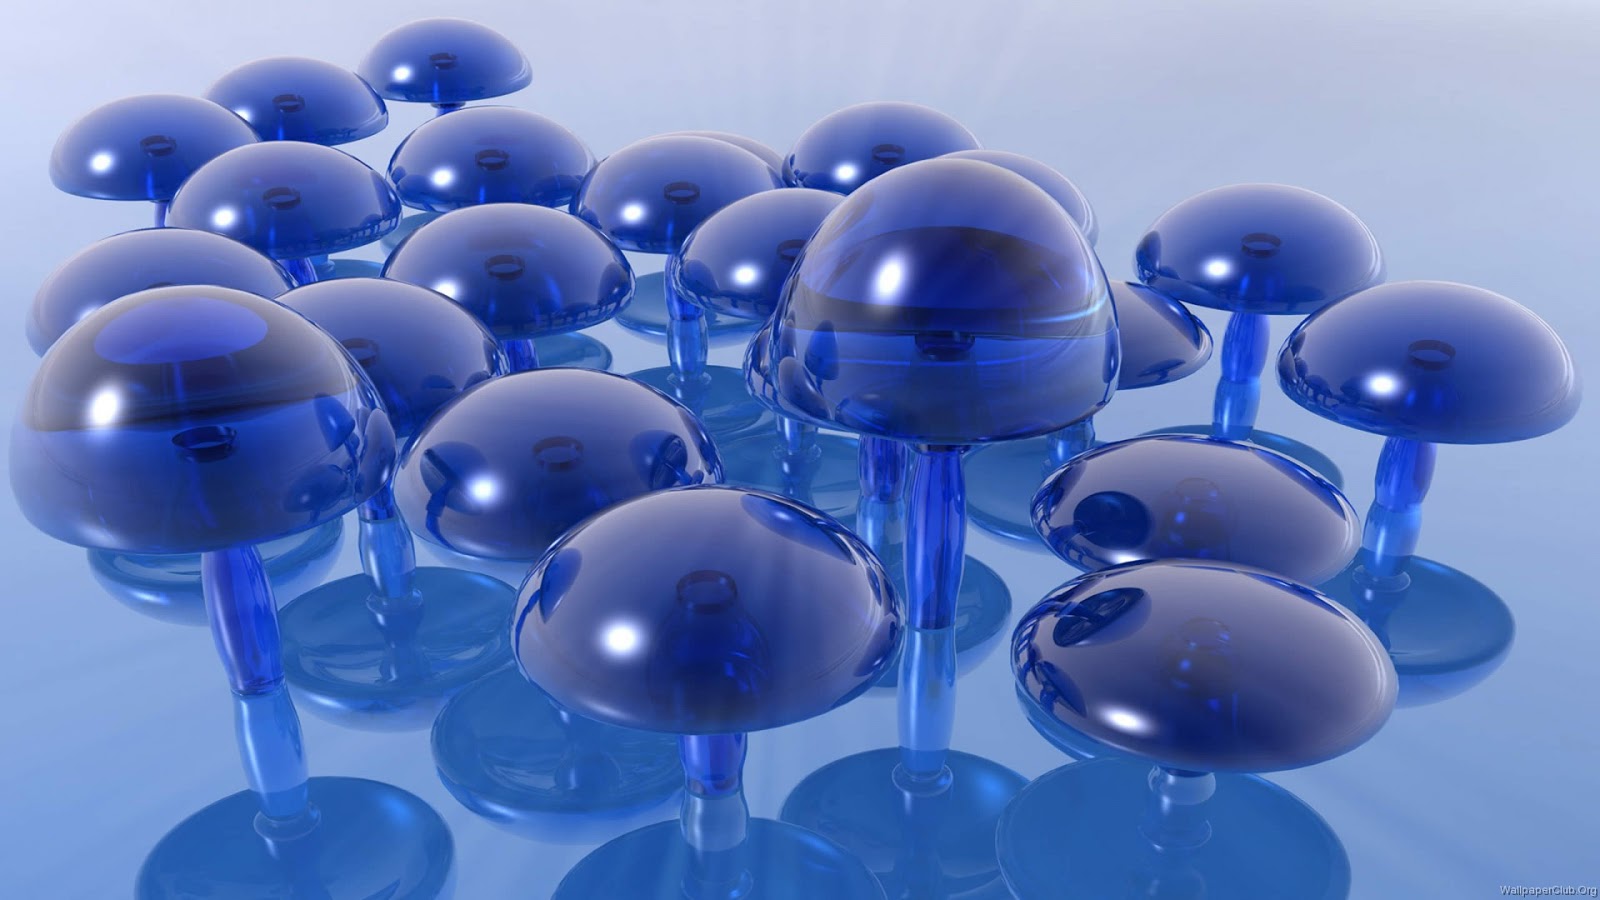 descargar fondo de pantalla harimau bergerak,azul cobalto,azul,esfera,agua,vaso